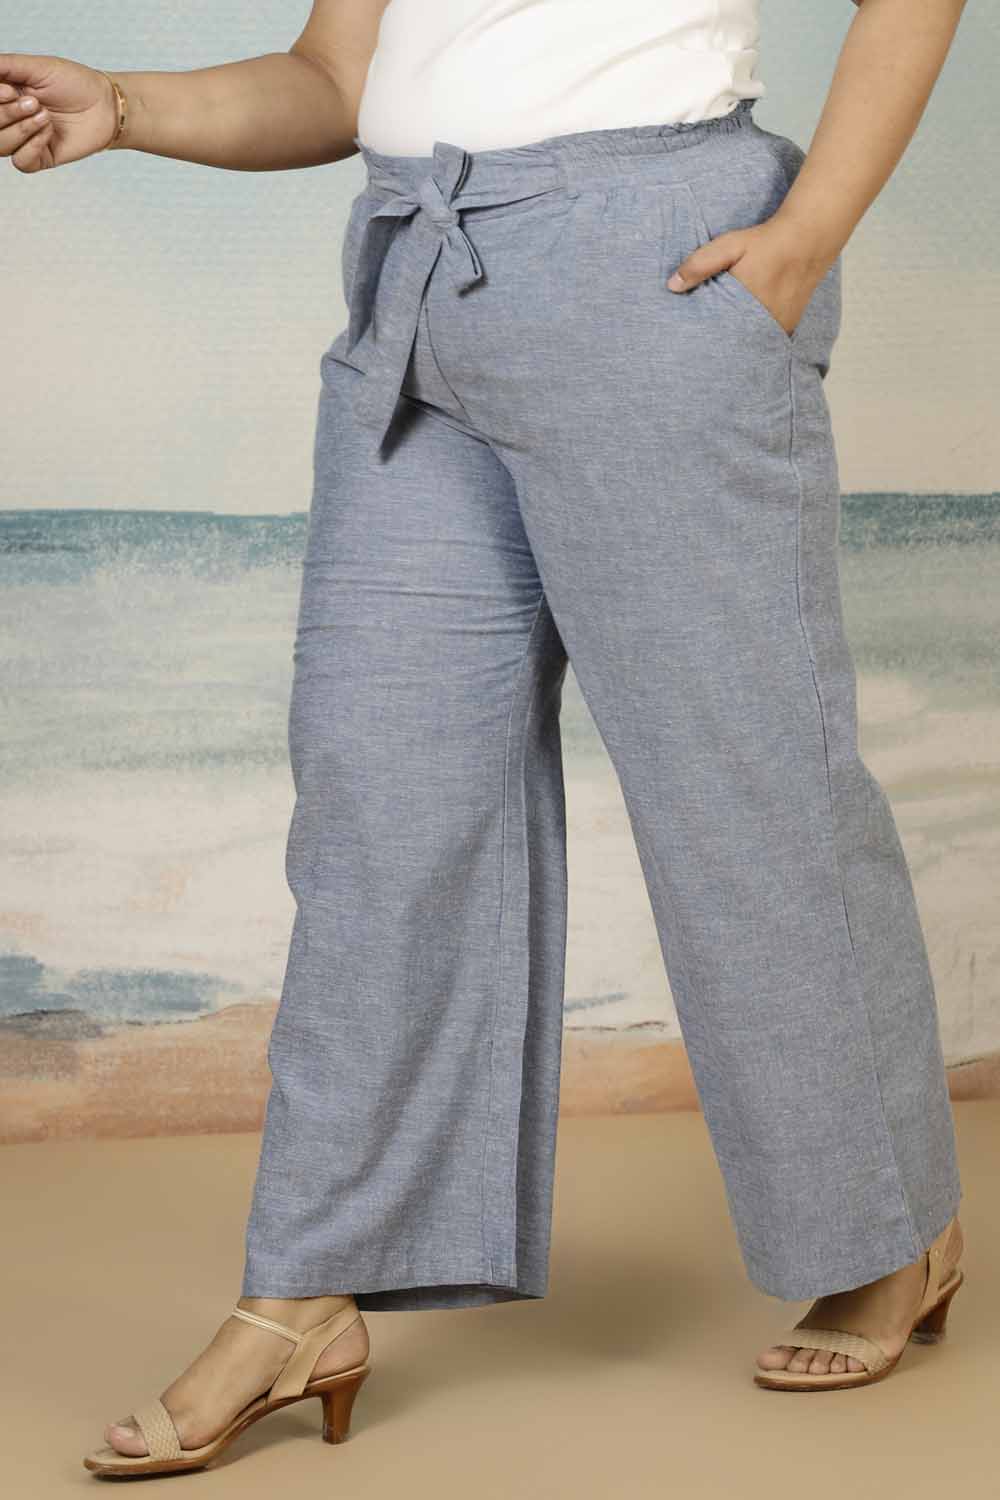 Plus Size Yale Blue Tie Detail Pants